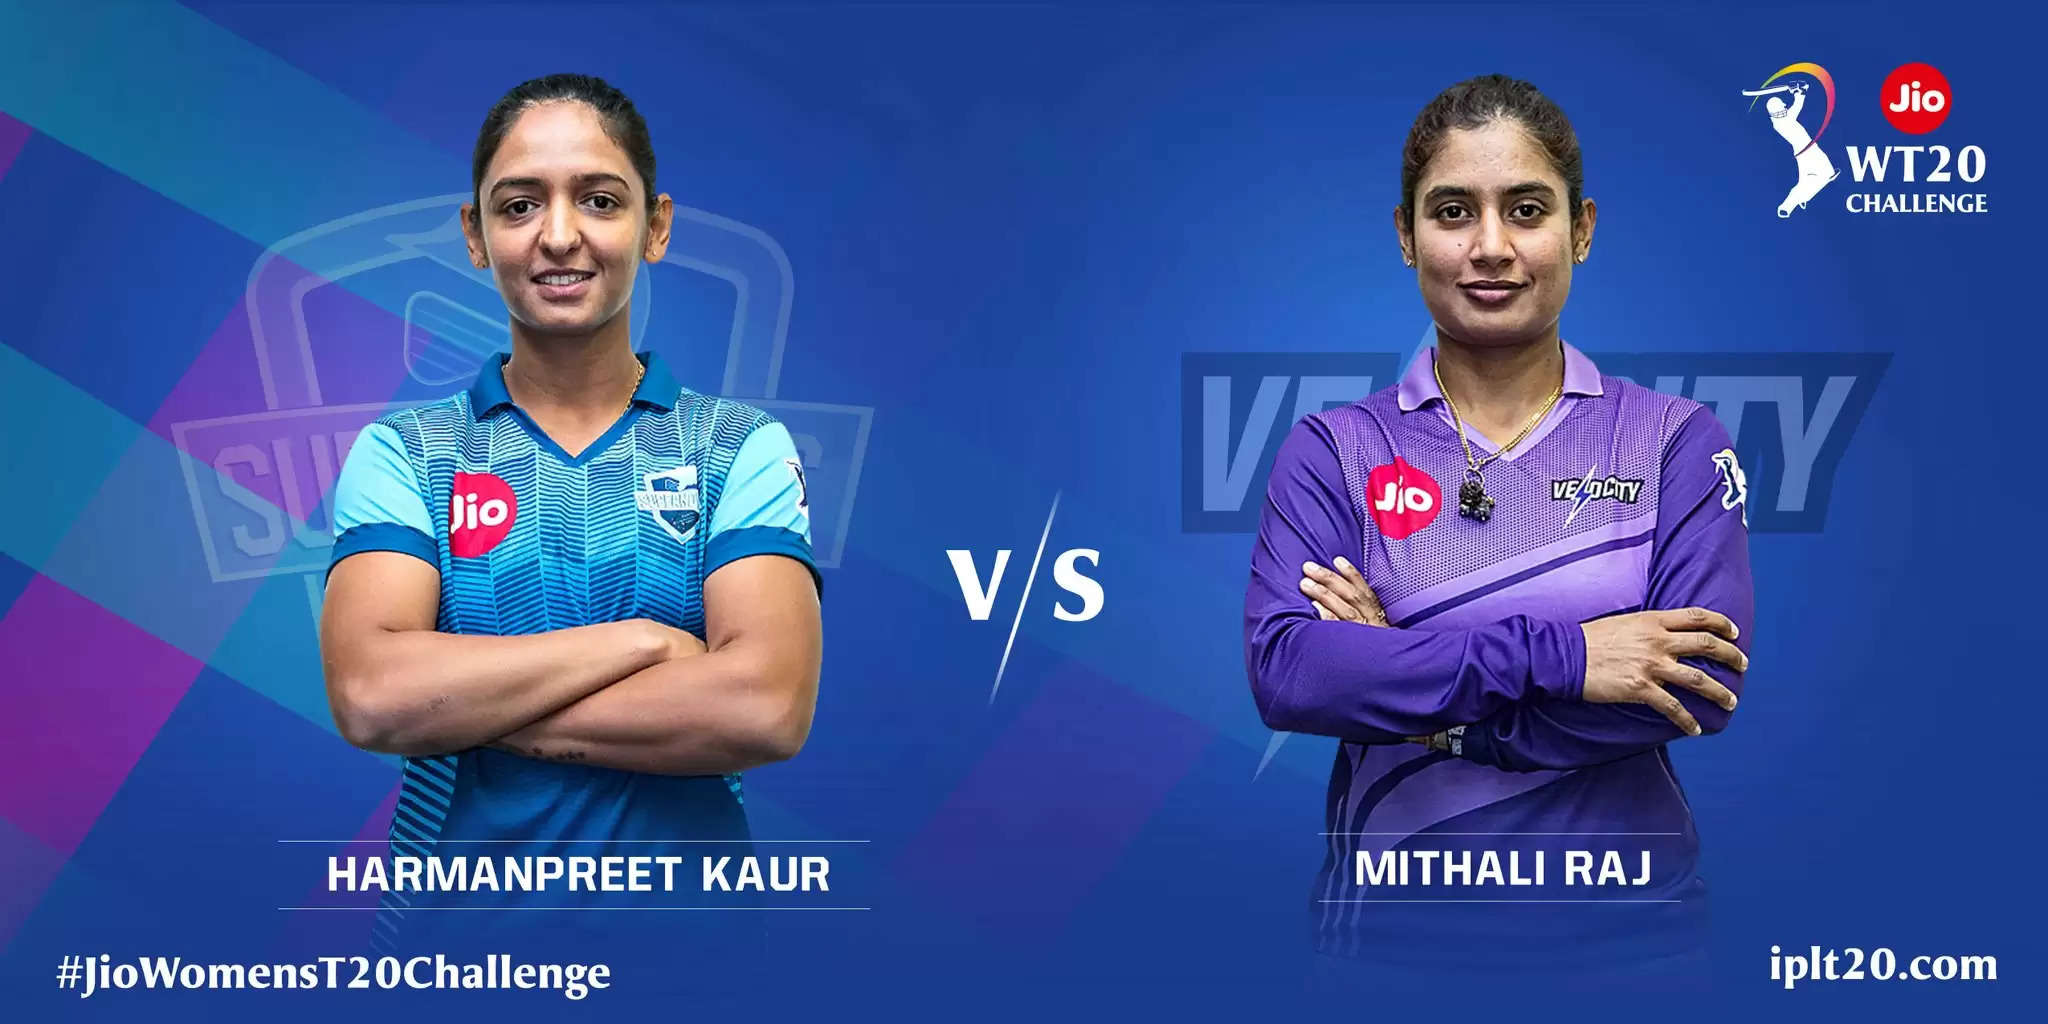 மிதாலி ராஜ் vs ஹர்மன்பிரீத் கவுர் – WomensT20